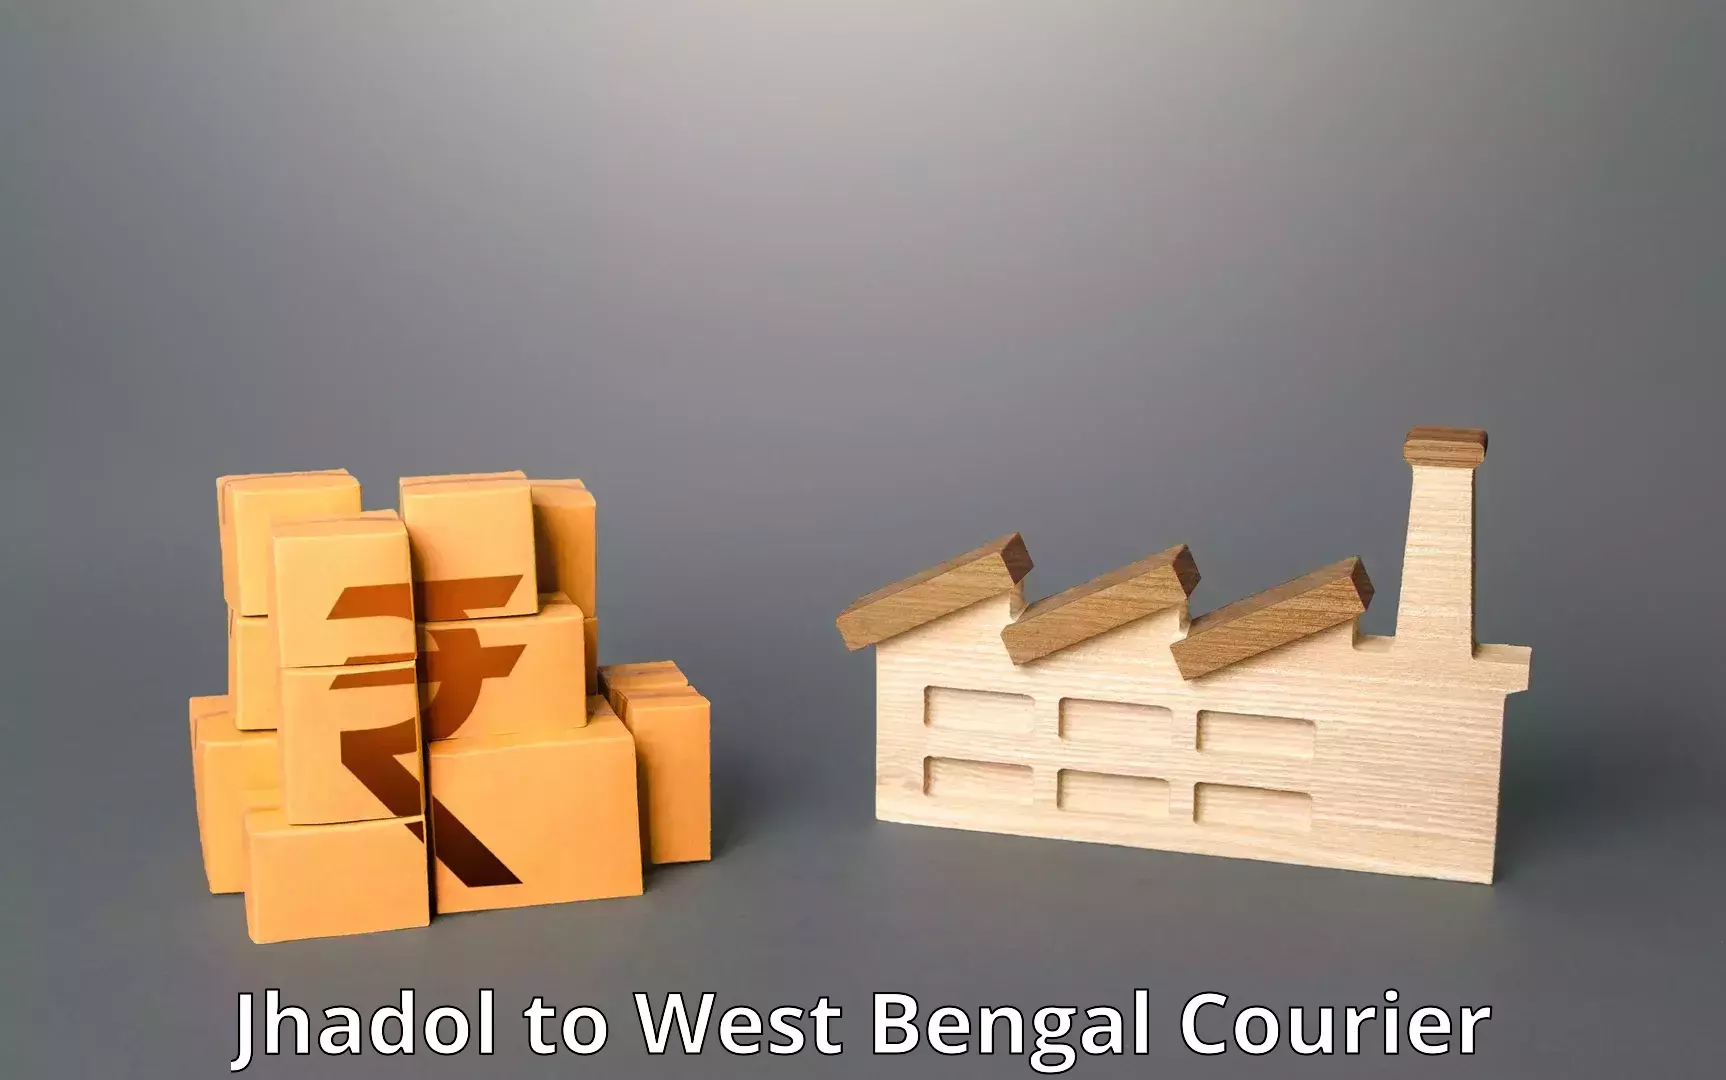 Reliable parcel services Jhadol to Haldia port